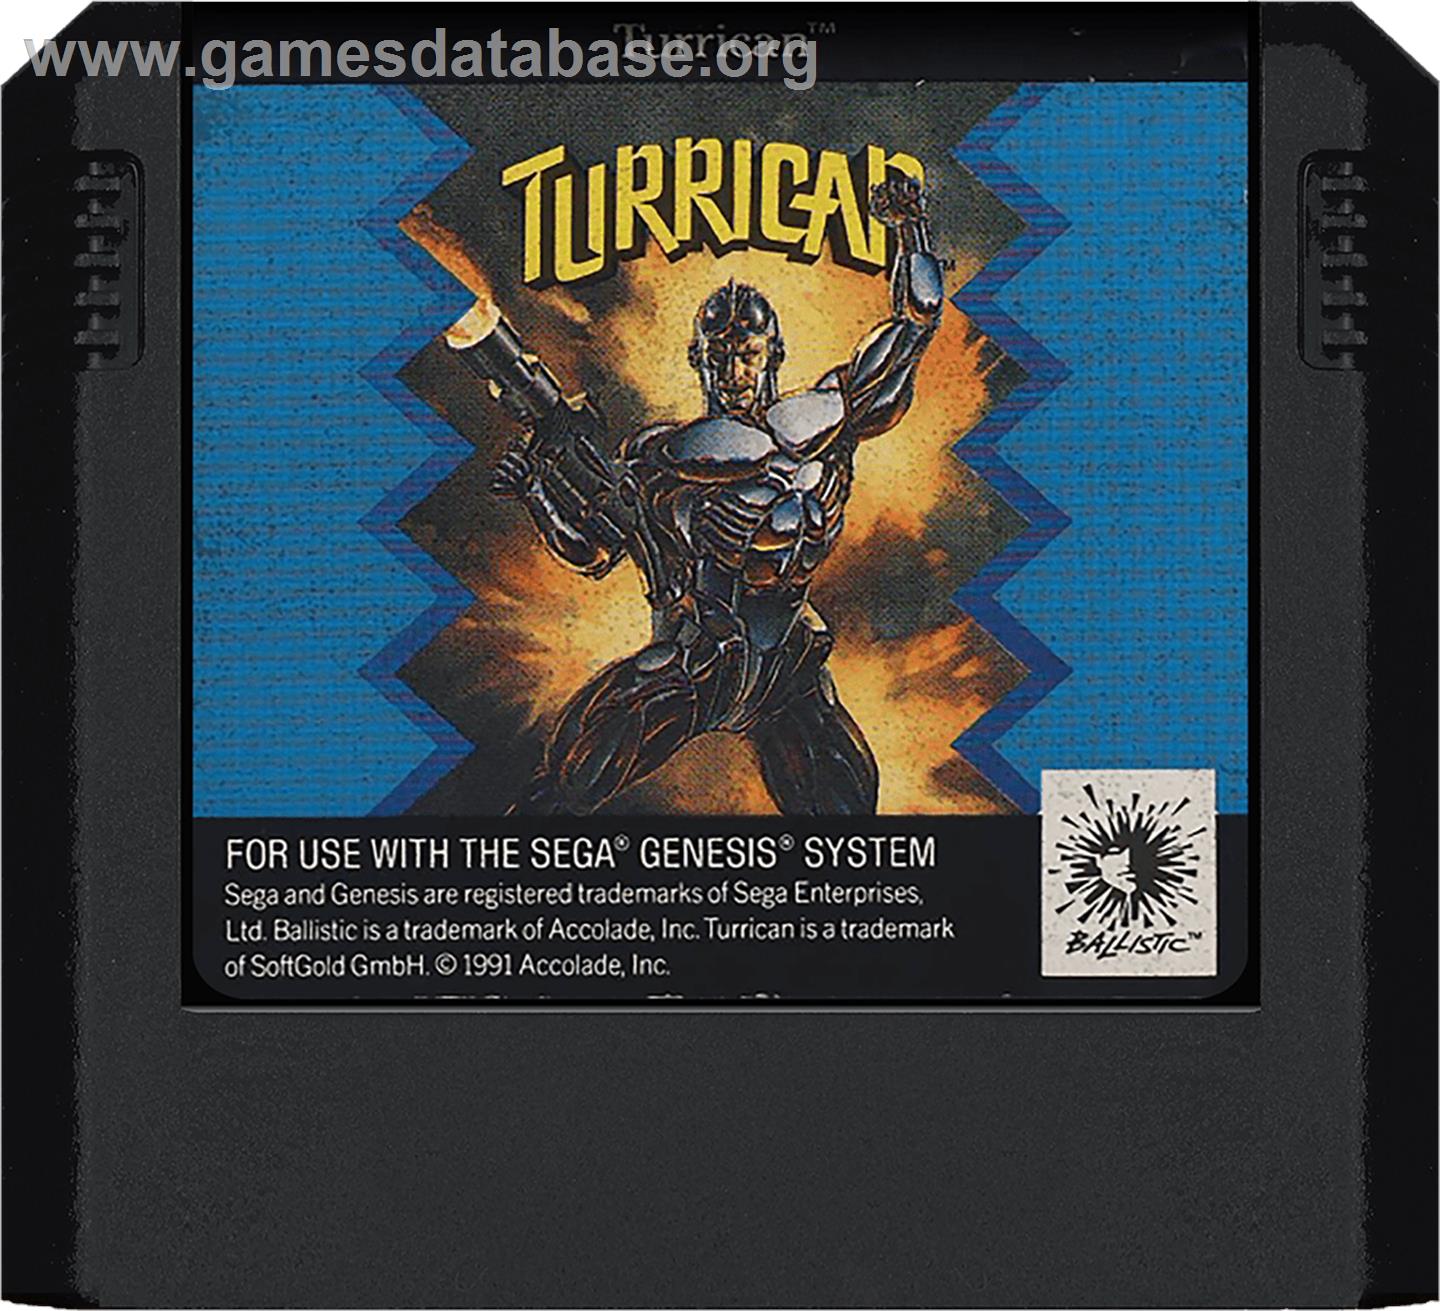 Turrican - Sega Genesis - Artwork - Cartridge